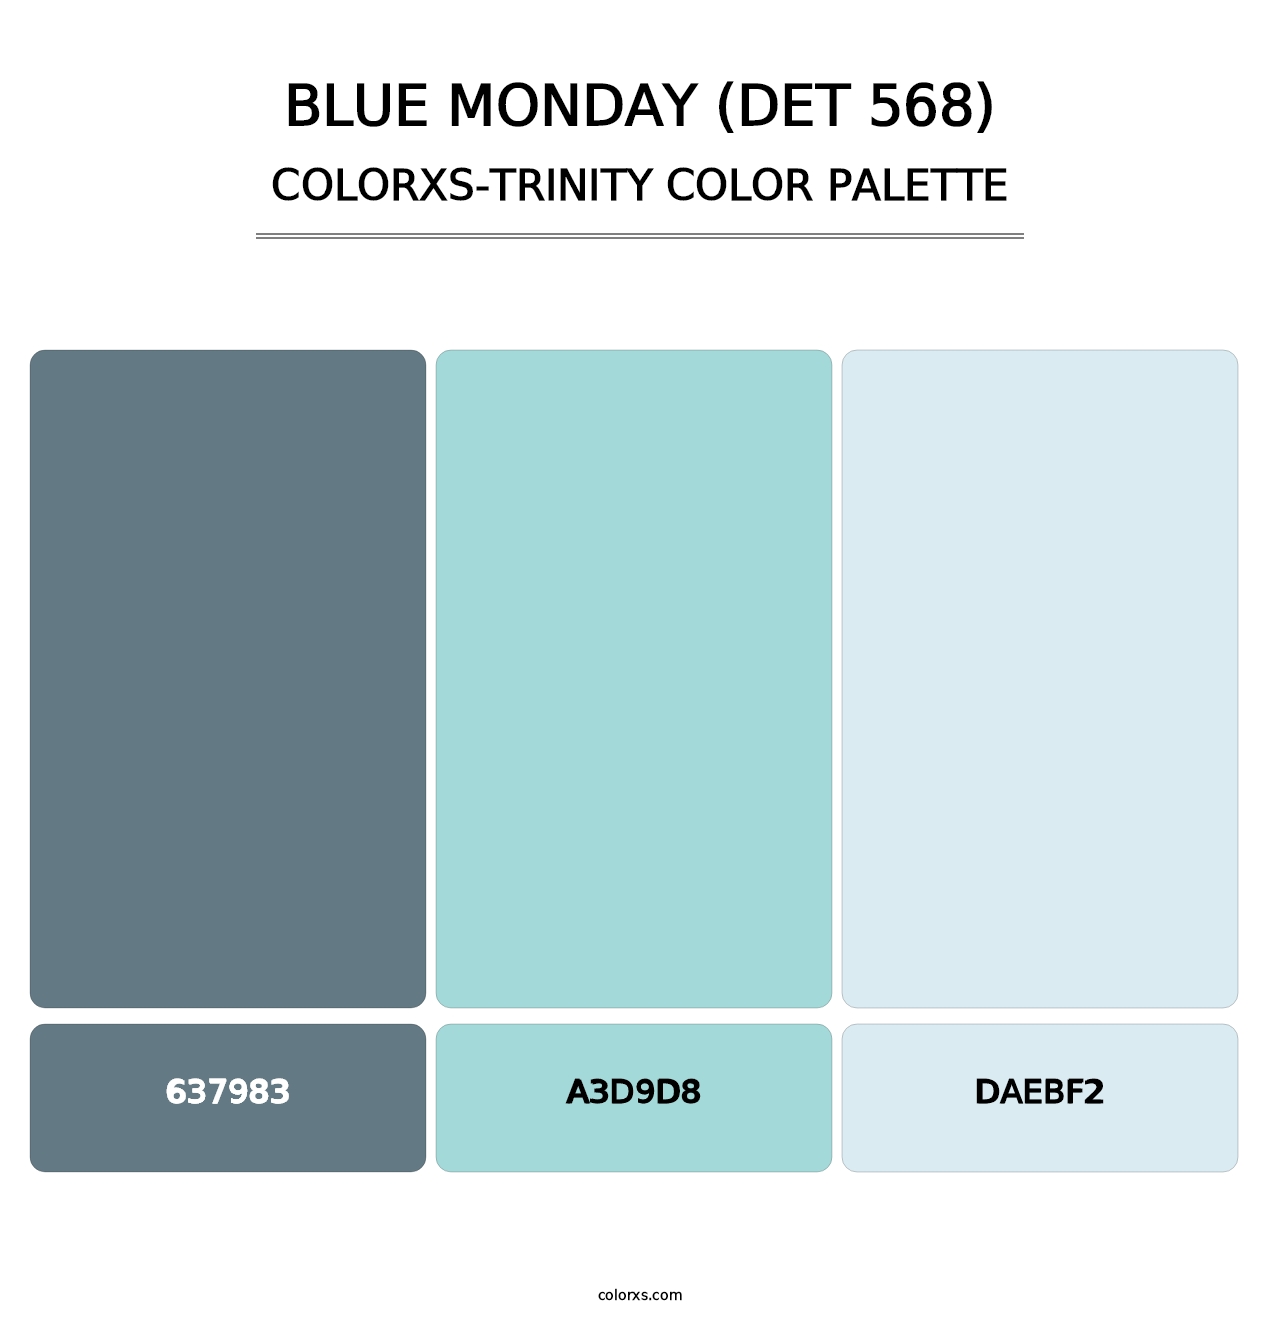 Blue Monday (DET 568) - Colorxs Trinity Palette